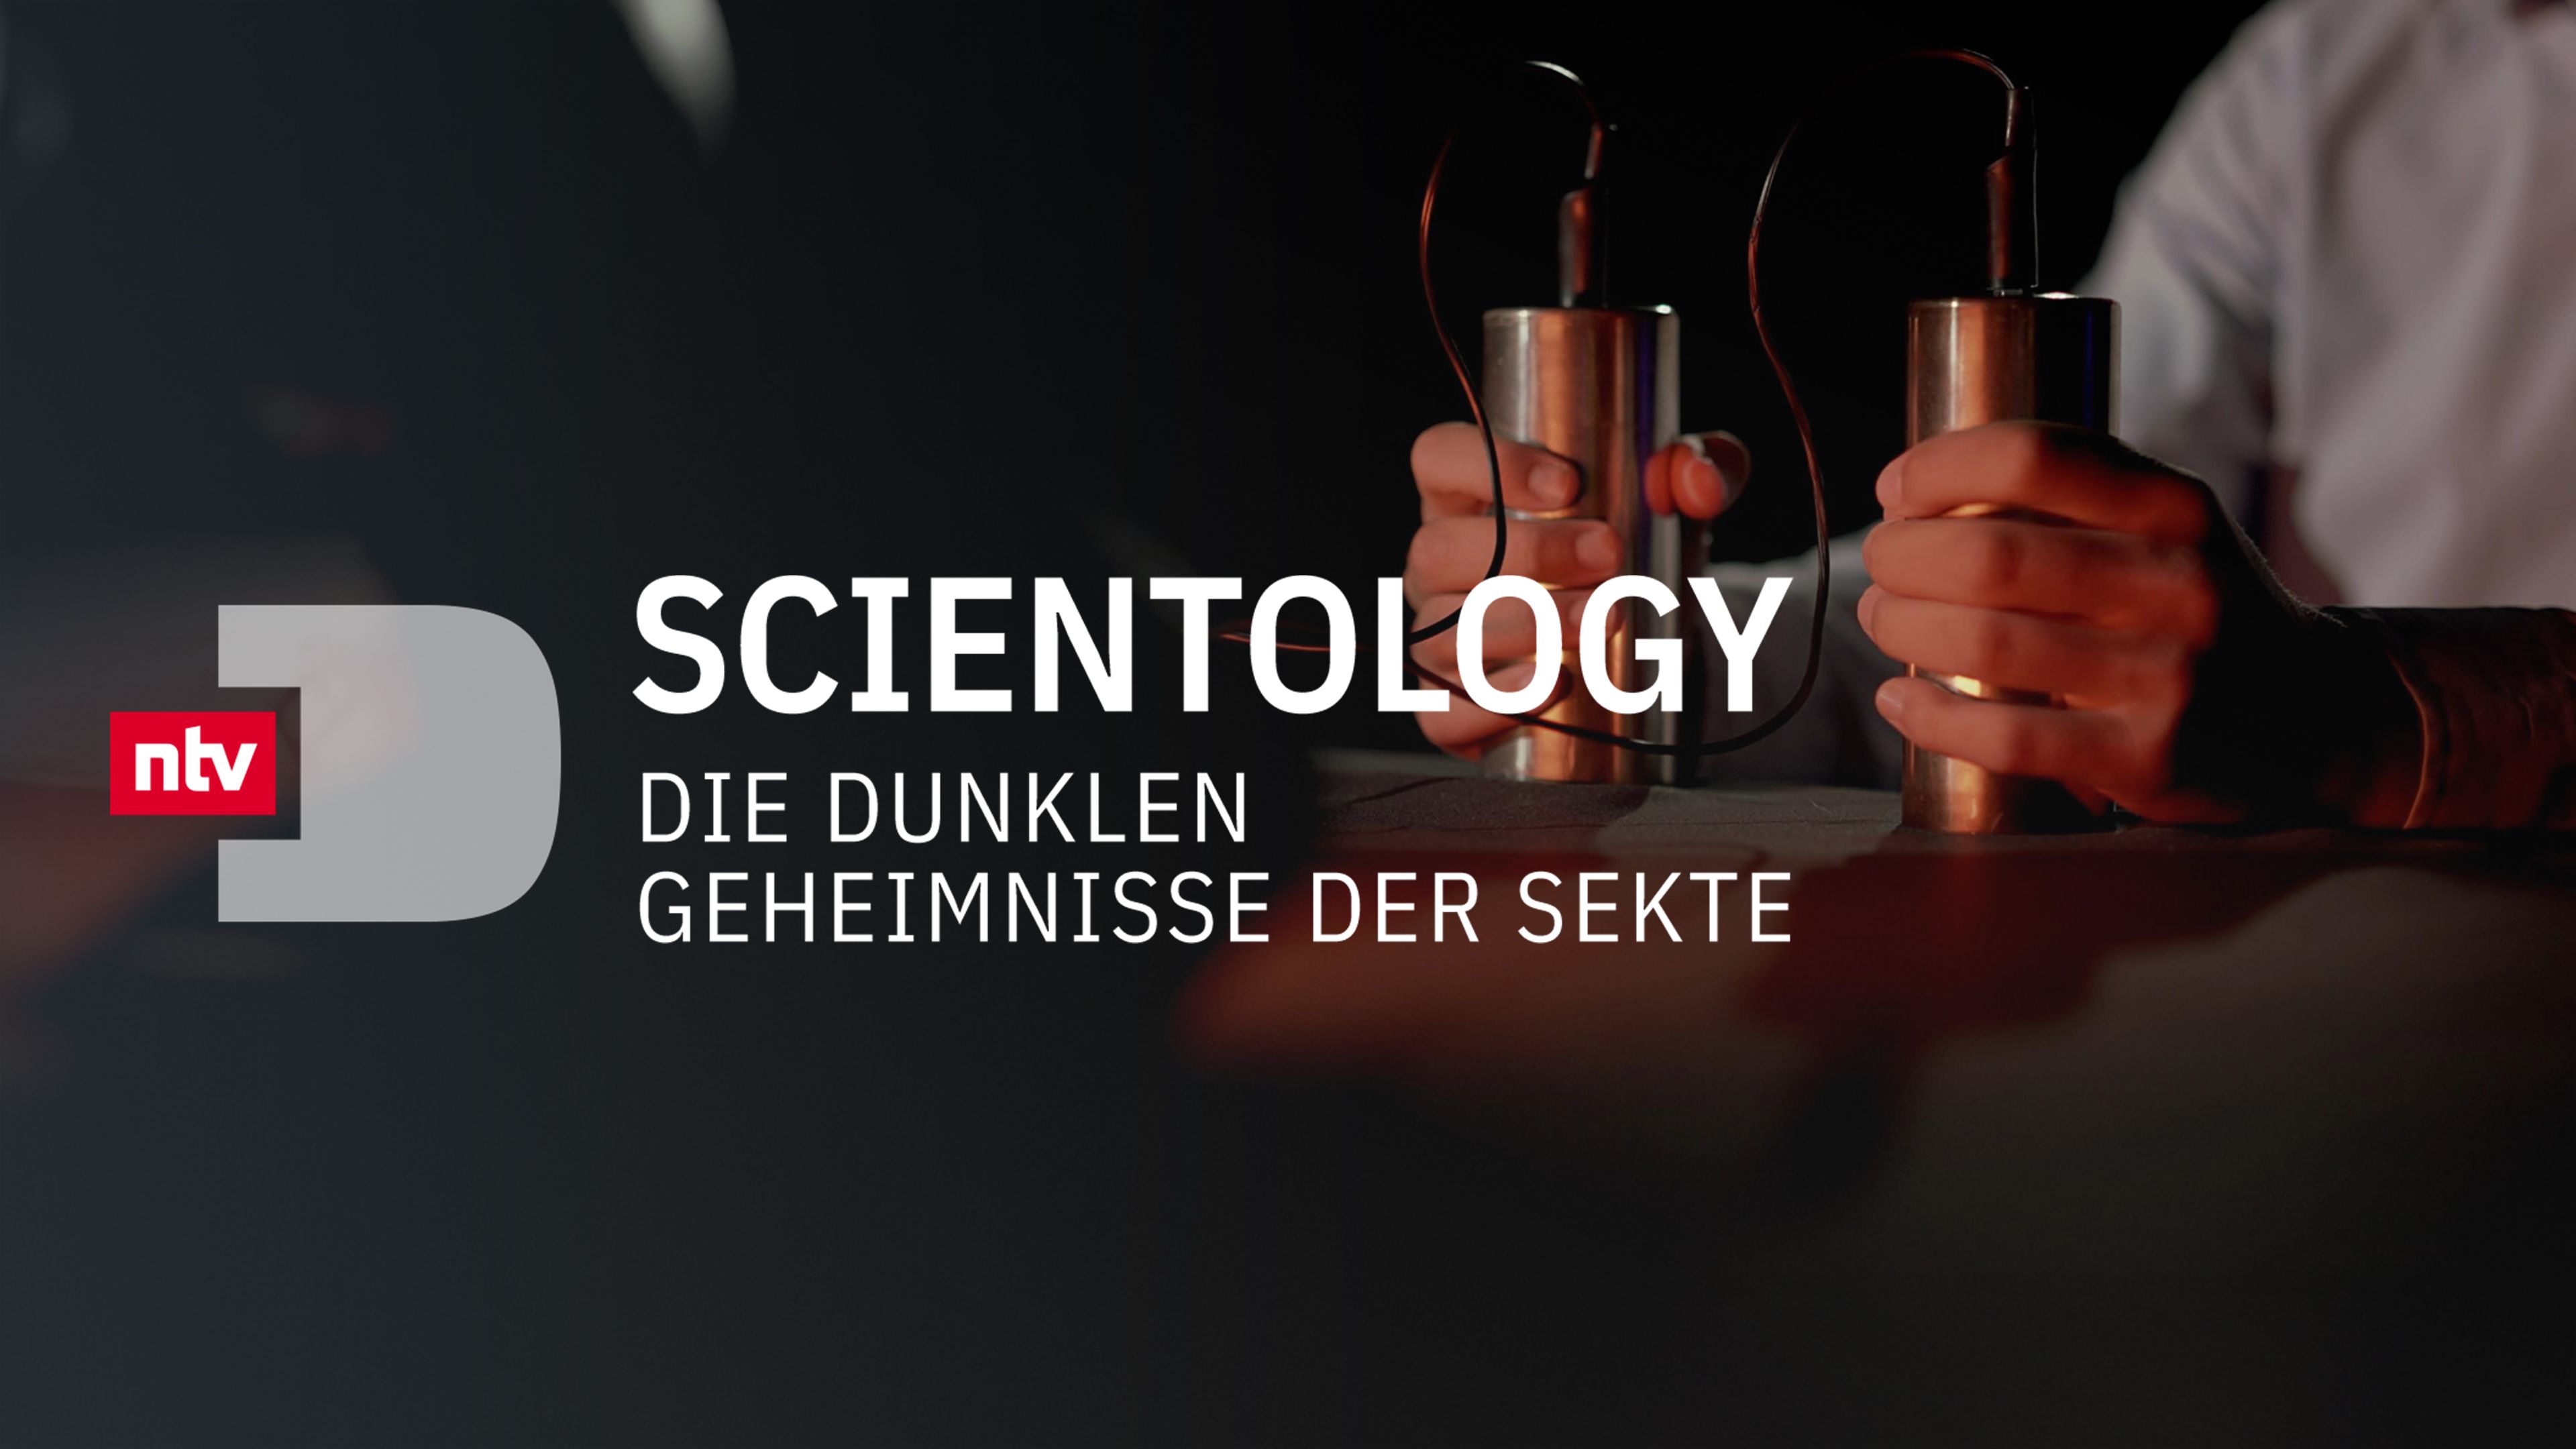 Scientology - Die dunklen Geheimnisse der Sekte